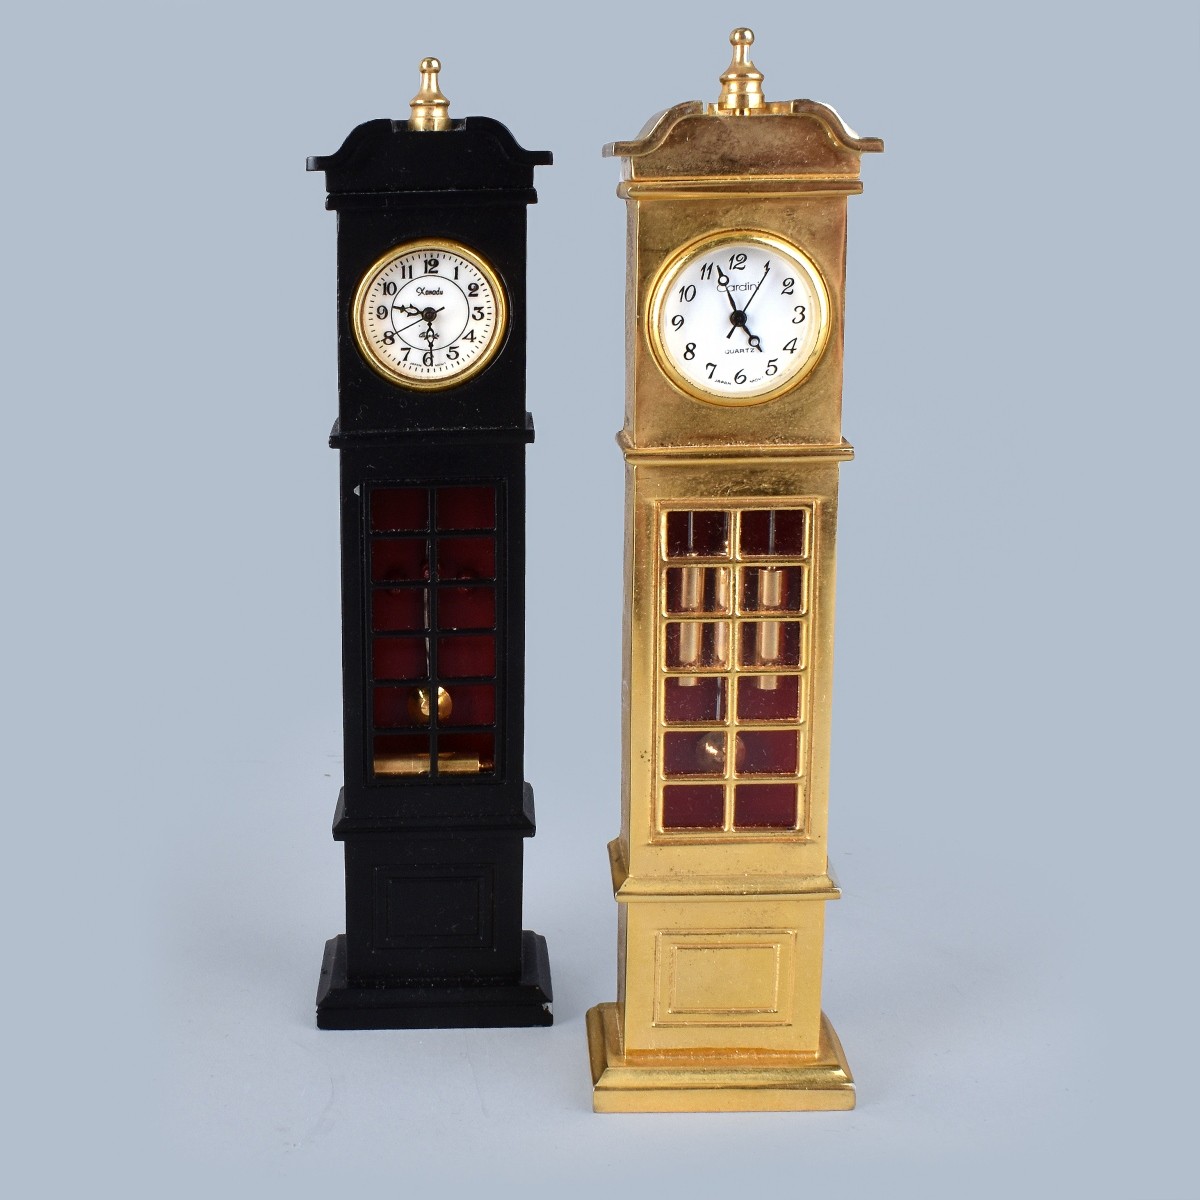 13 Miniature Brass Clocks